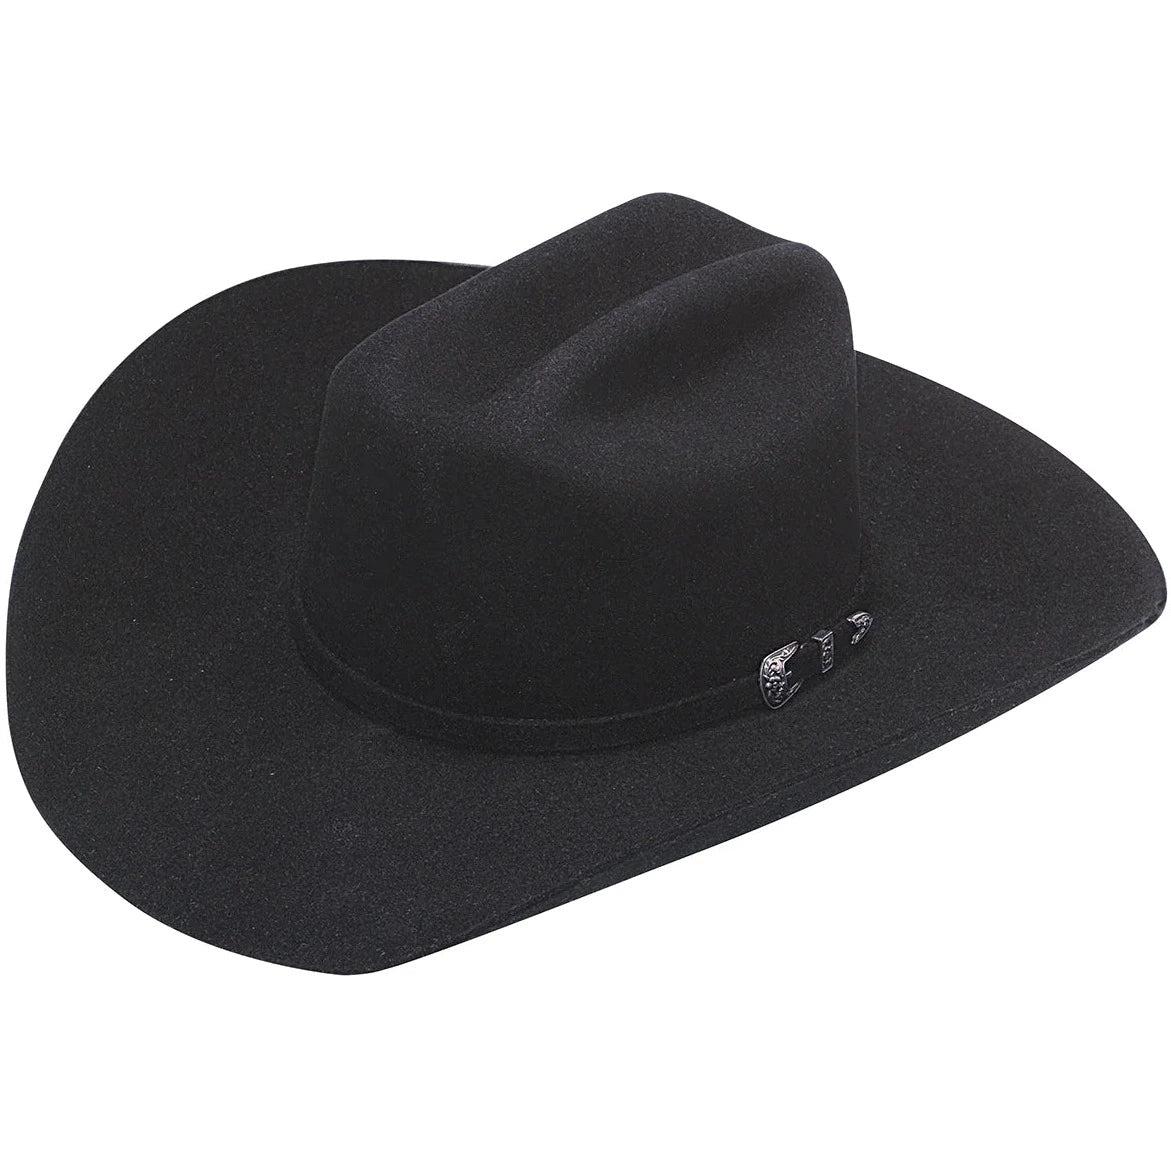 Twister 6X Black Fur Felt Hat